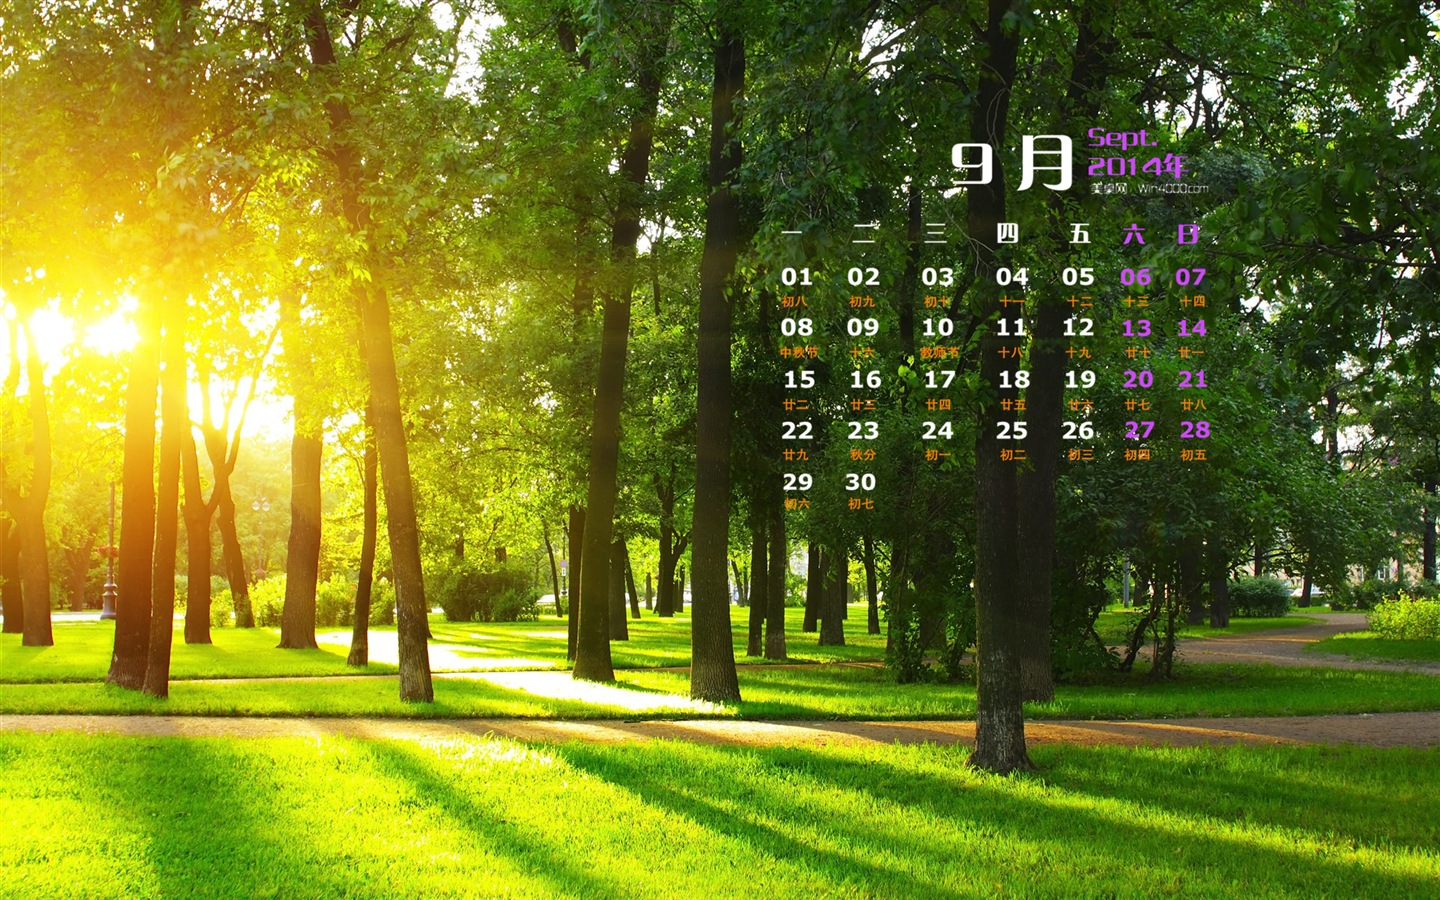 09 2014 wallpaper Calendario (1) #19 - 1440x900